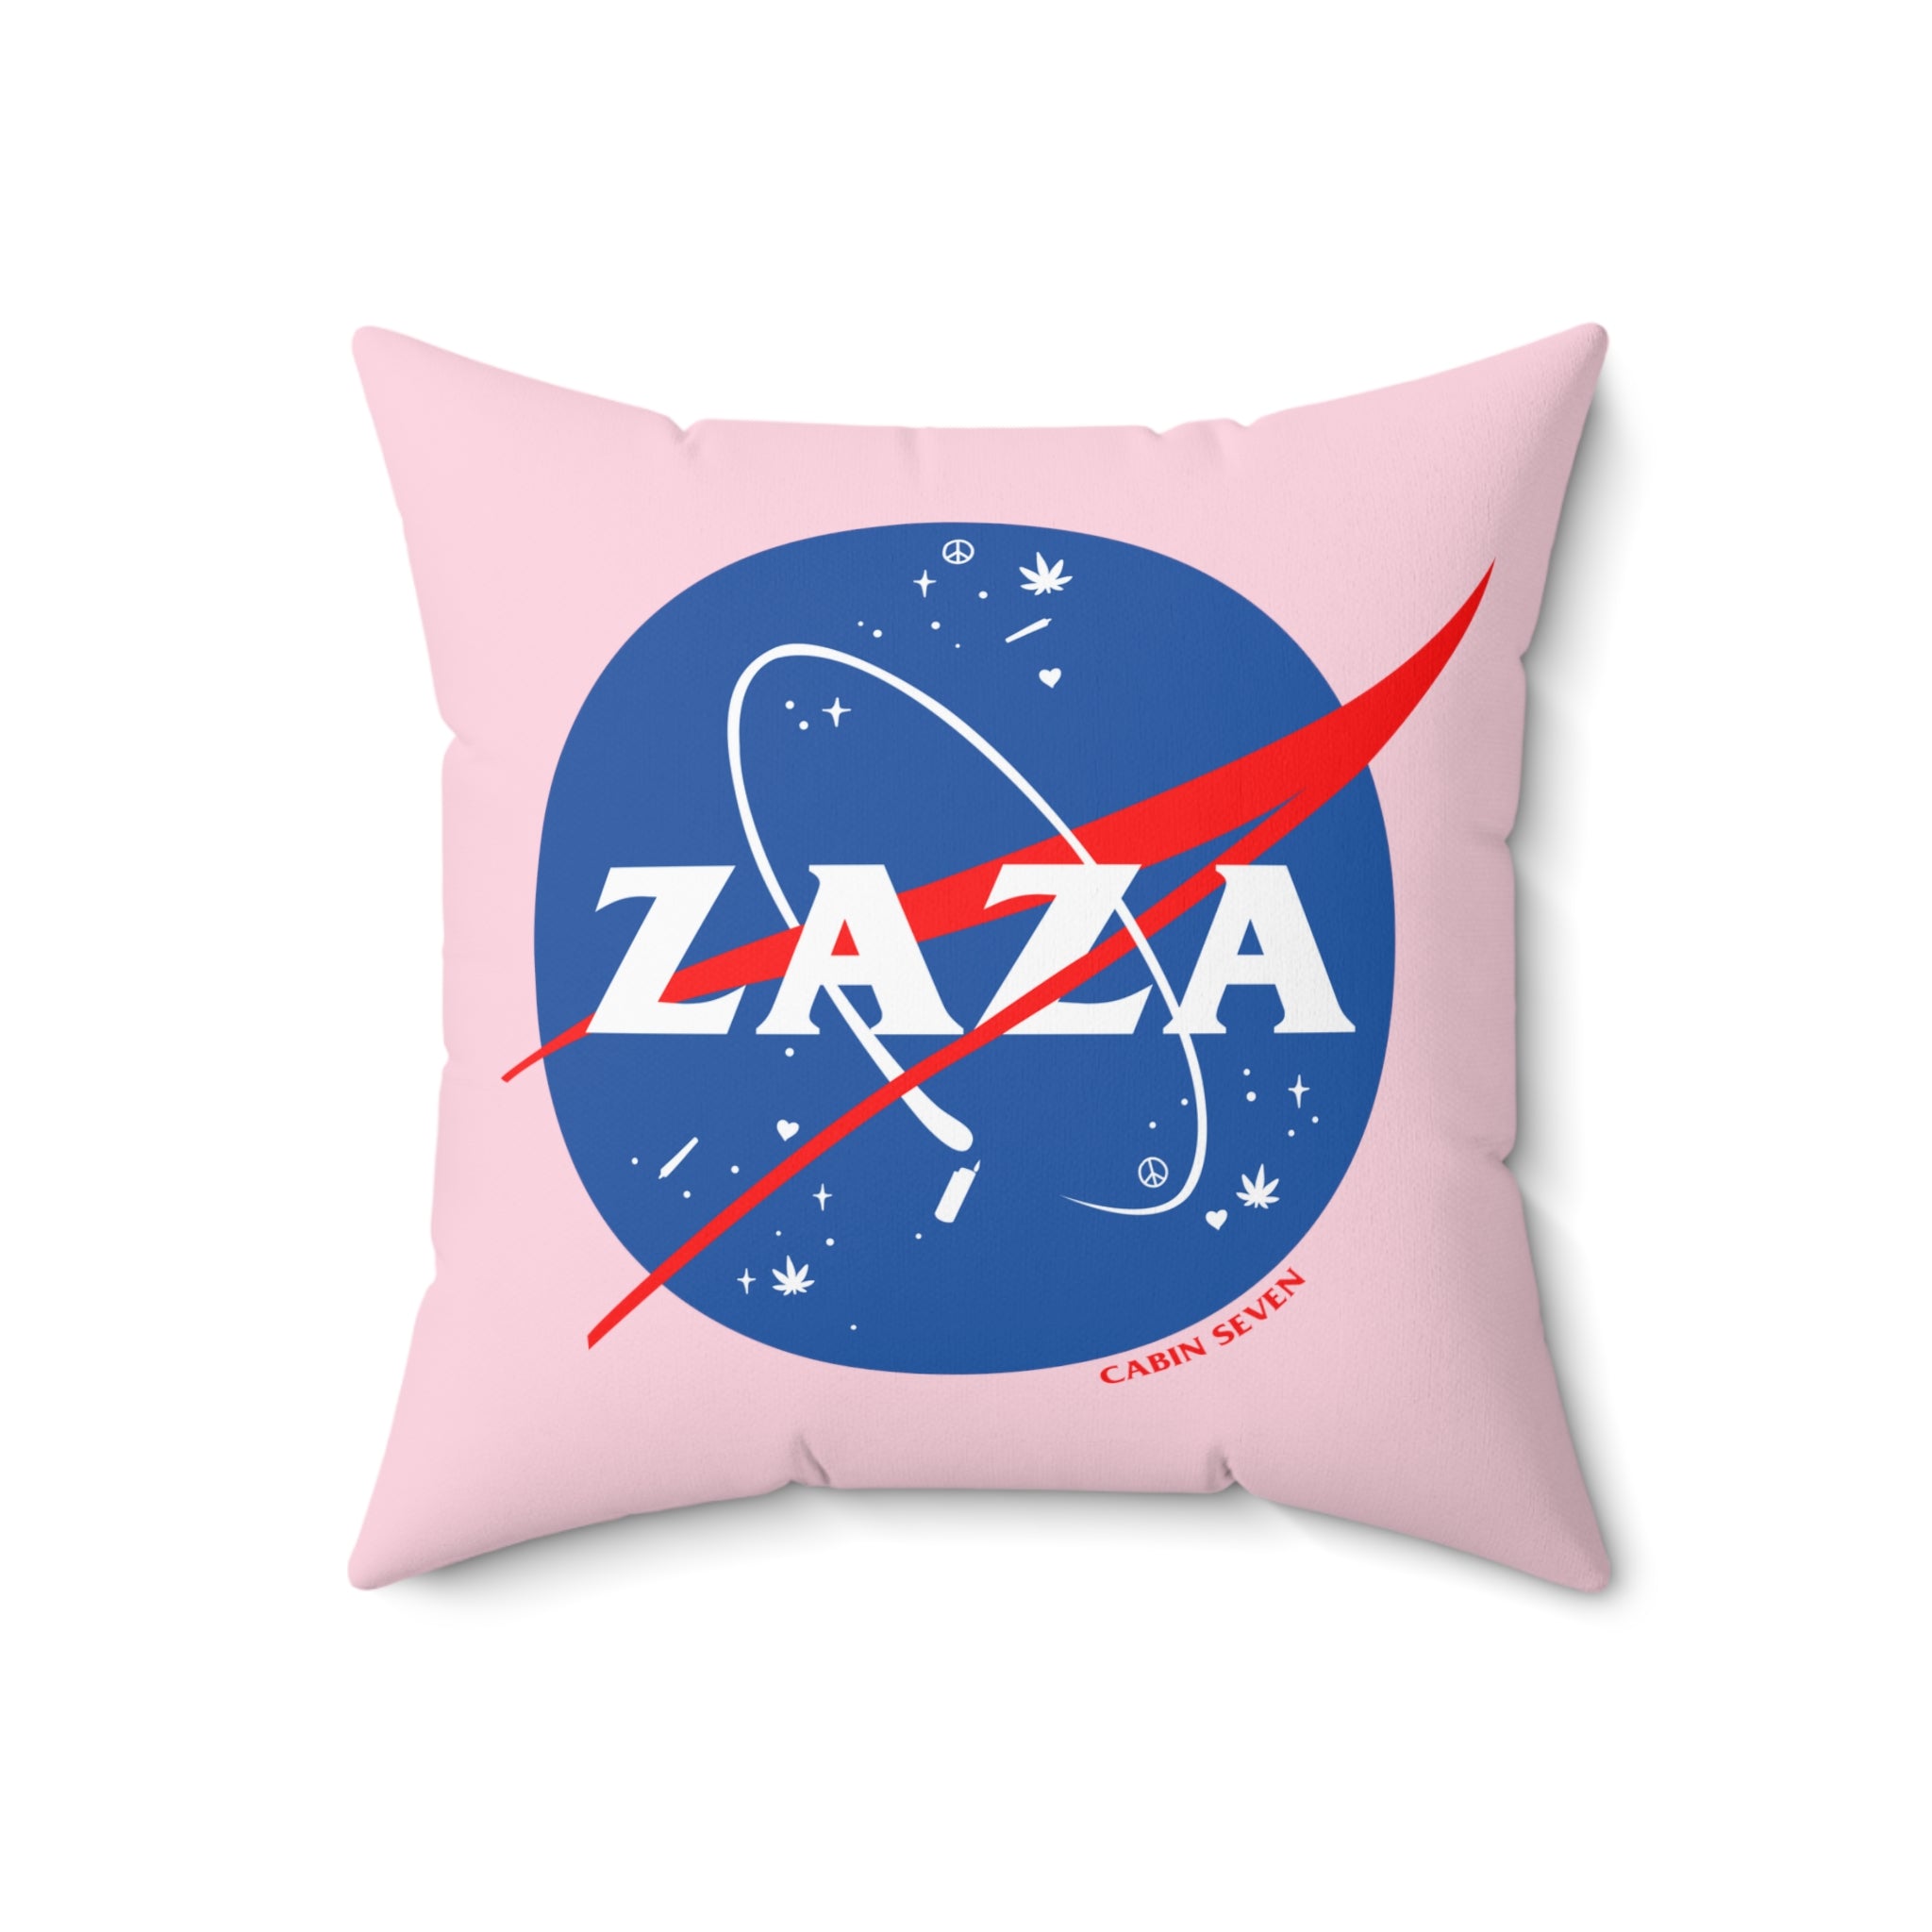 ZAZA Throw Pillow